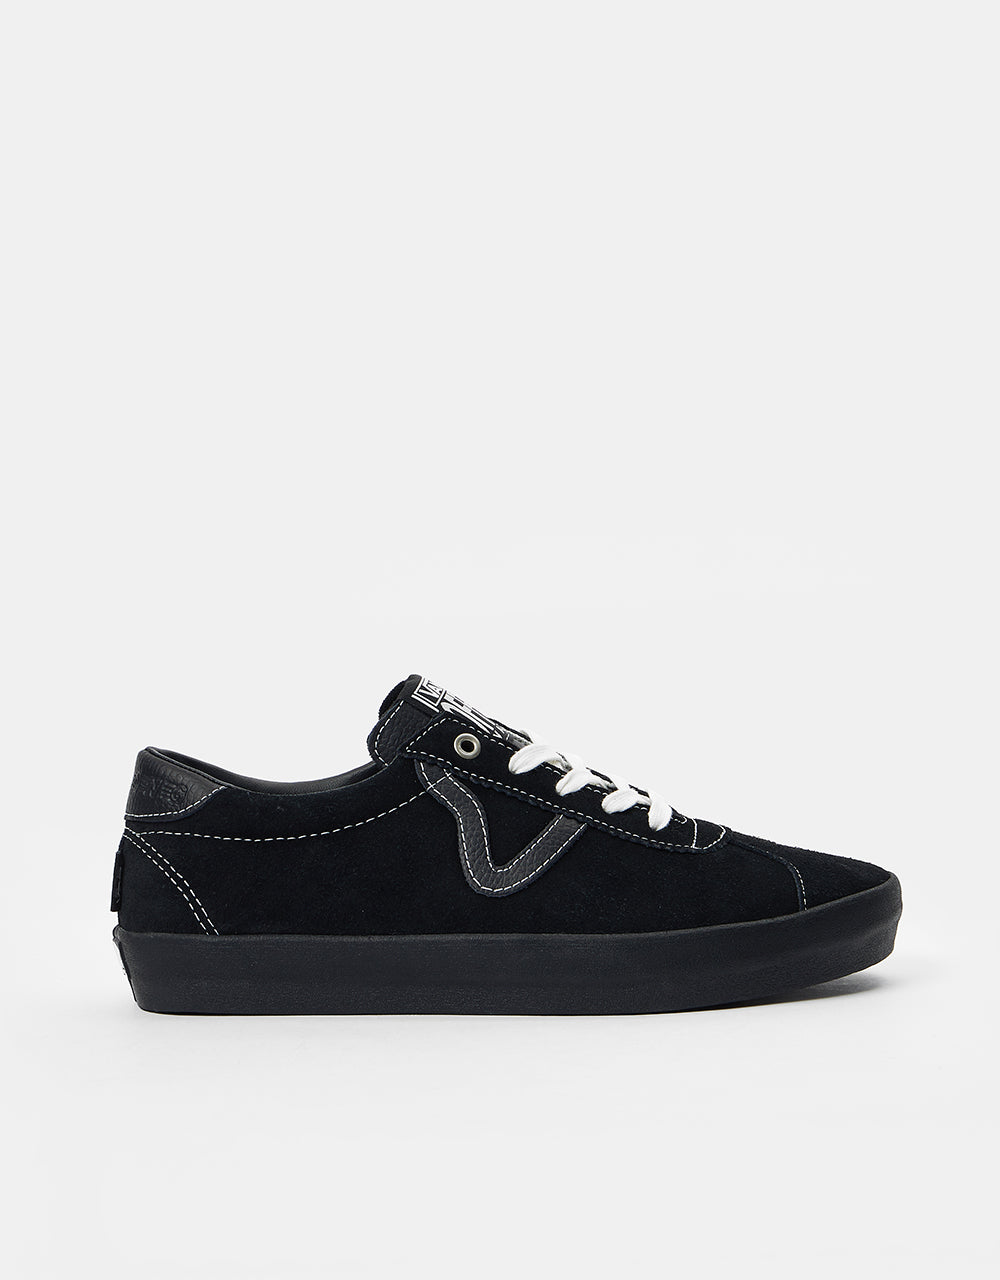 Vans Skate Sport Shoes - (Helena Long) Black/Marshmallow